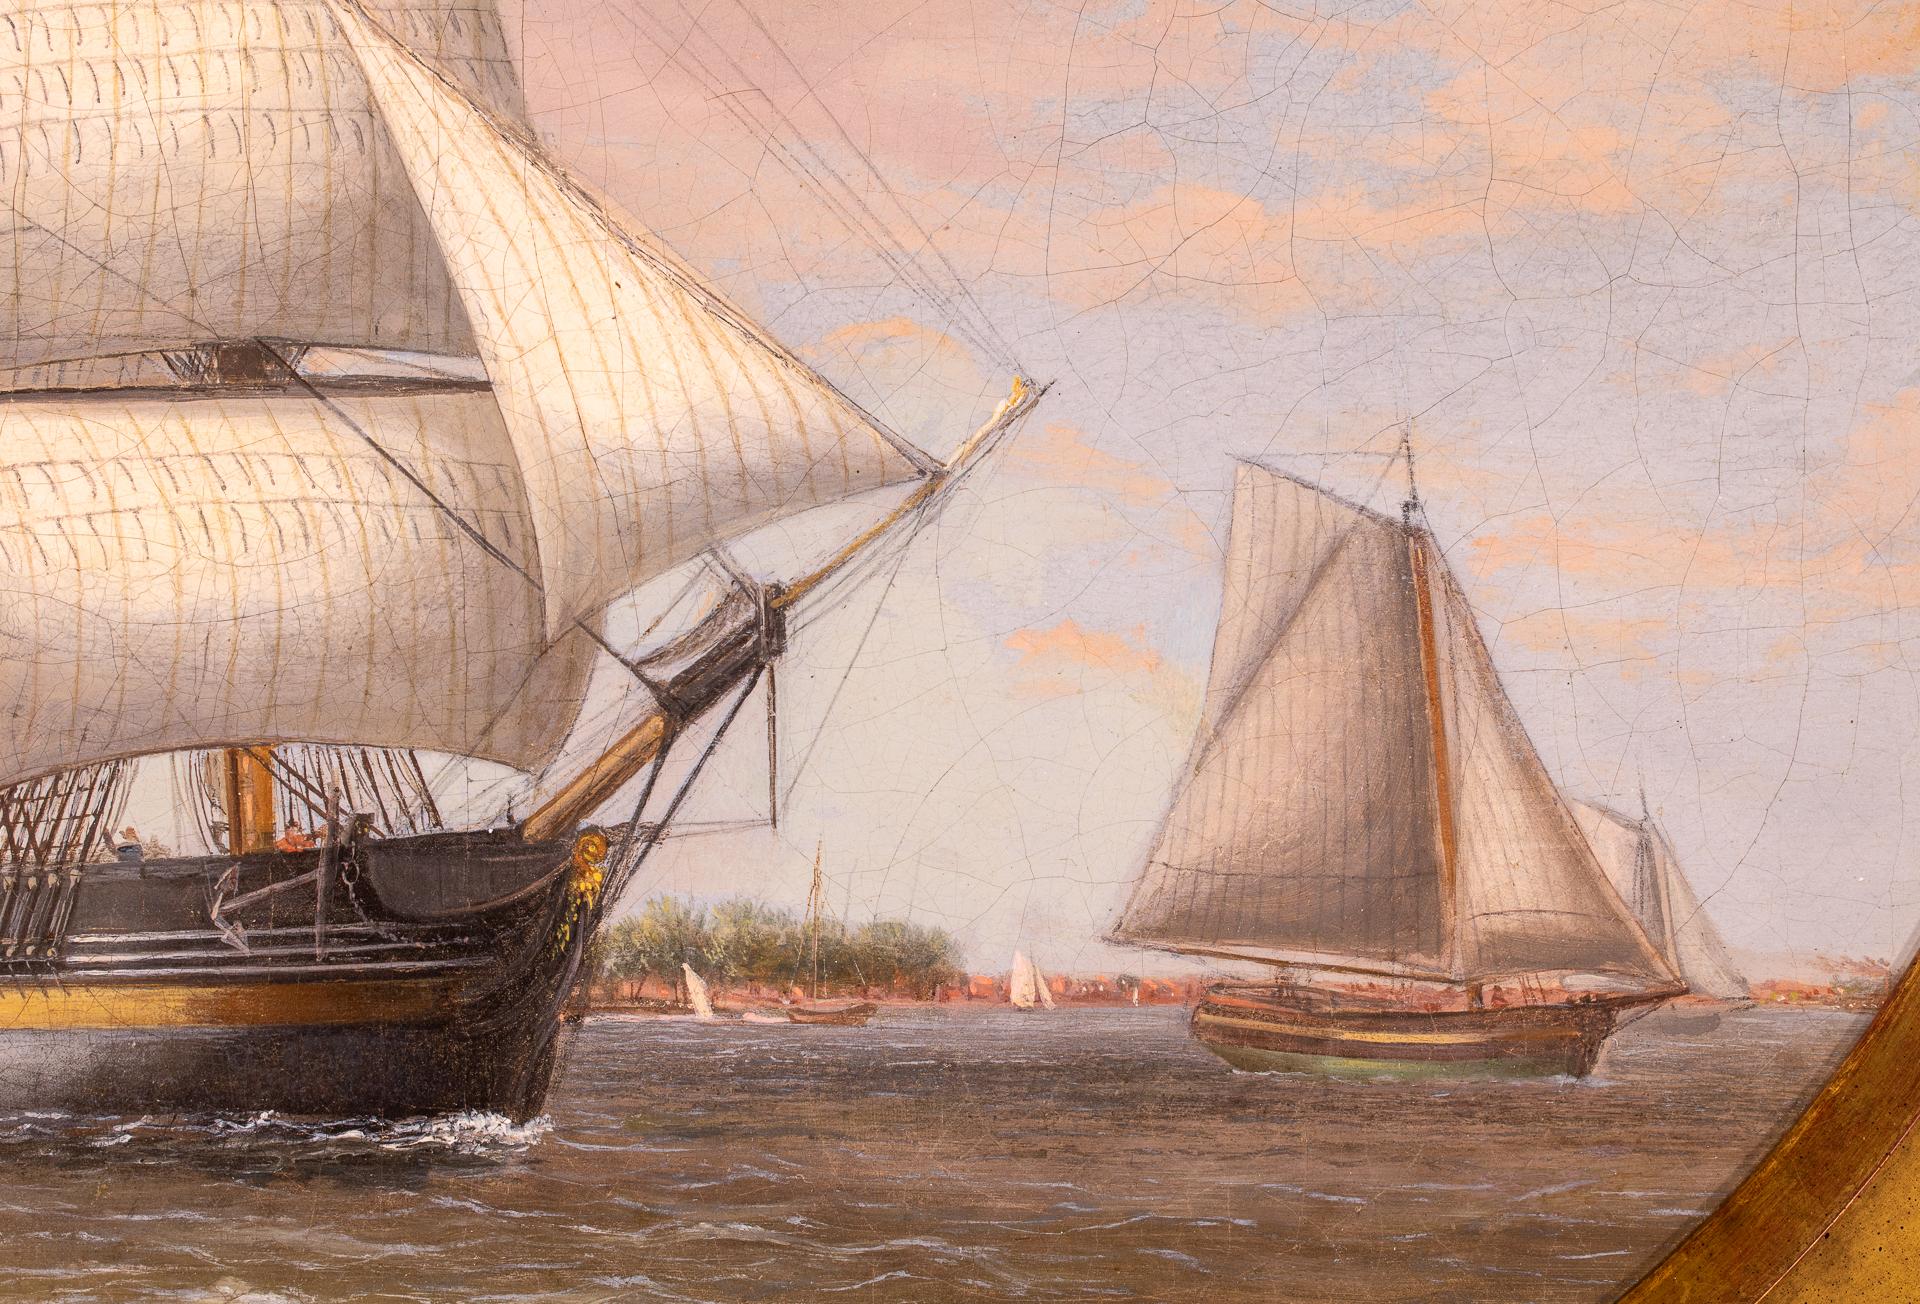 Thomas Birch gilt als einer der frühesten amerikanischen Marinemaler, der sowohl in seiner eigenen Zeit als auch historisch gesehen die Grundlage für die große amerikanische maritime Bewegung in den folgenden Jahren des 19.

Der gebürtige Engländer